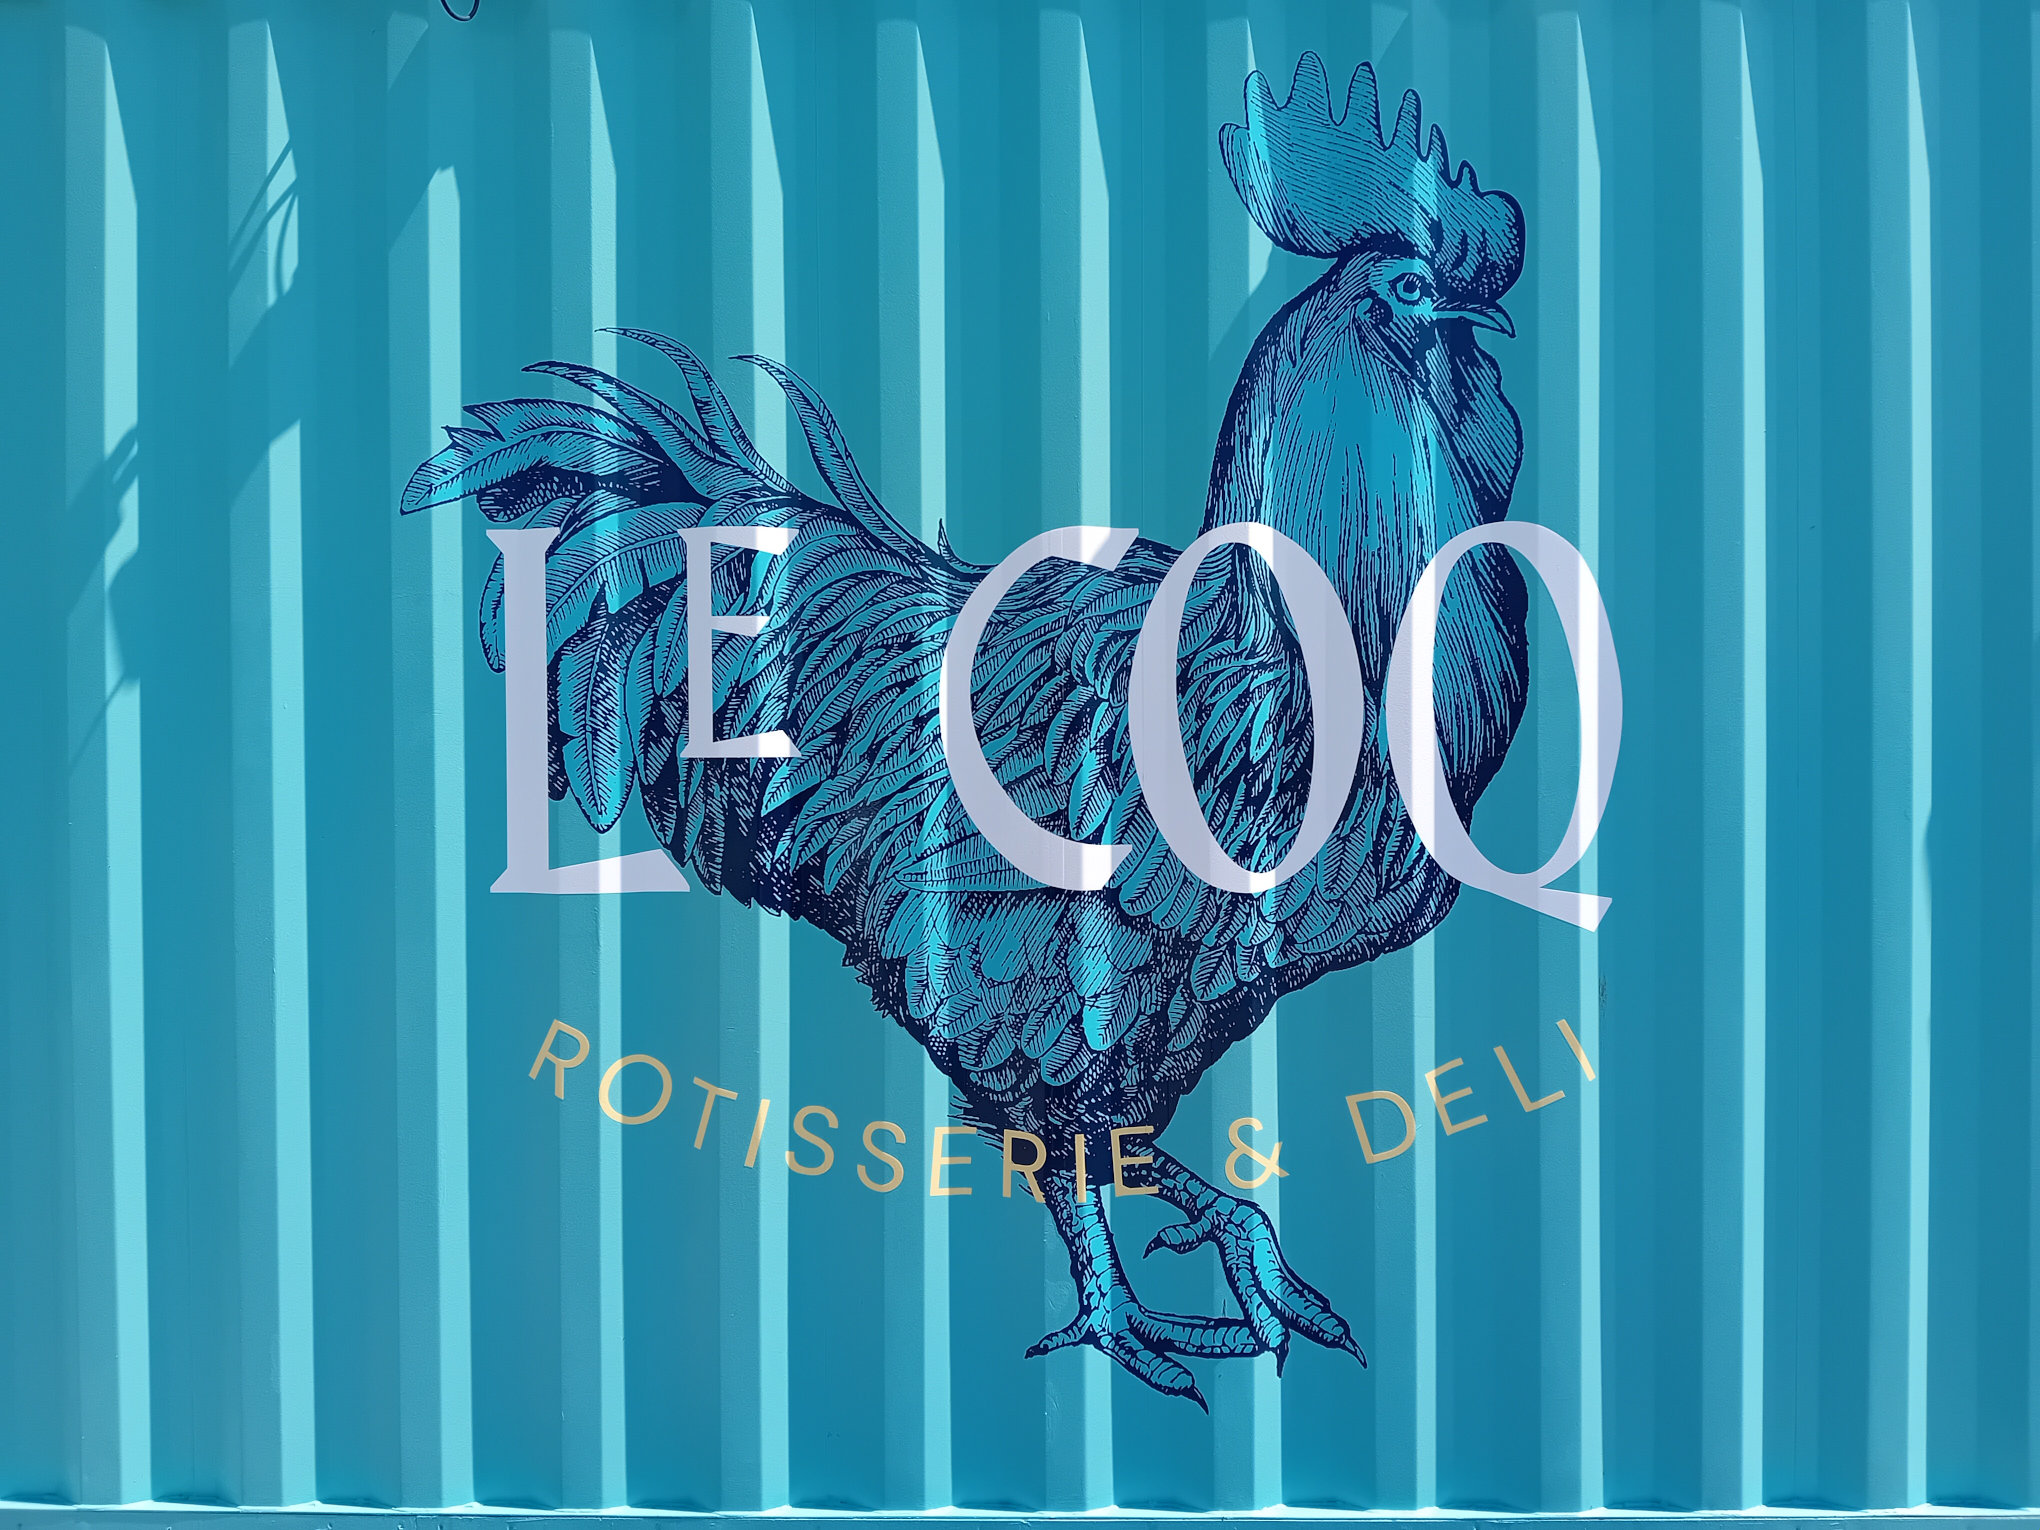 Le Coq